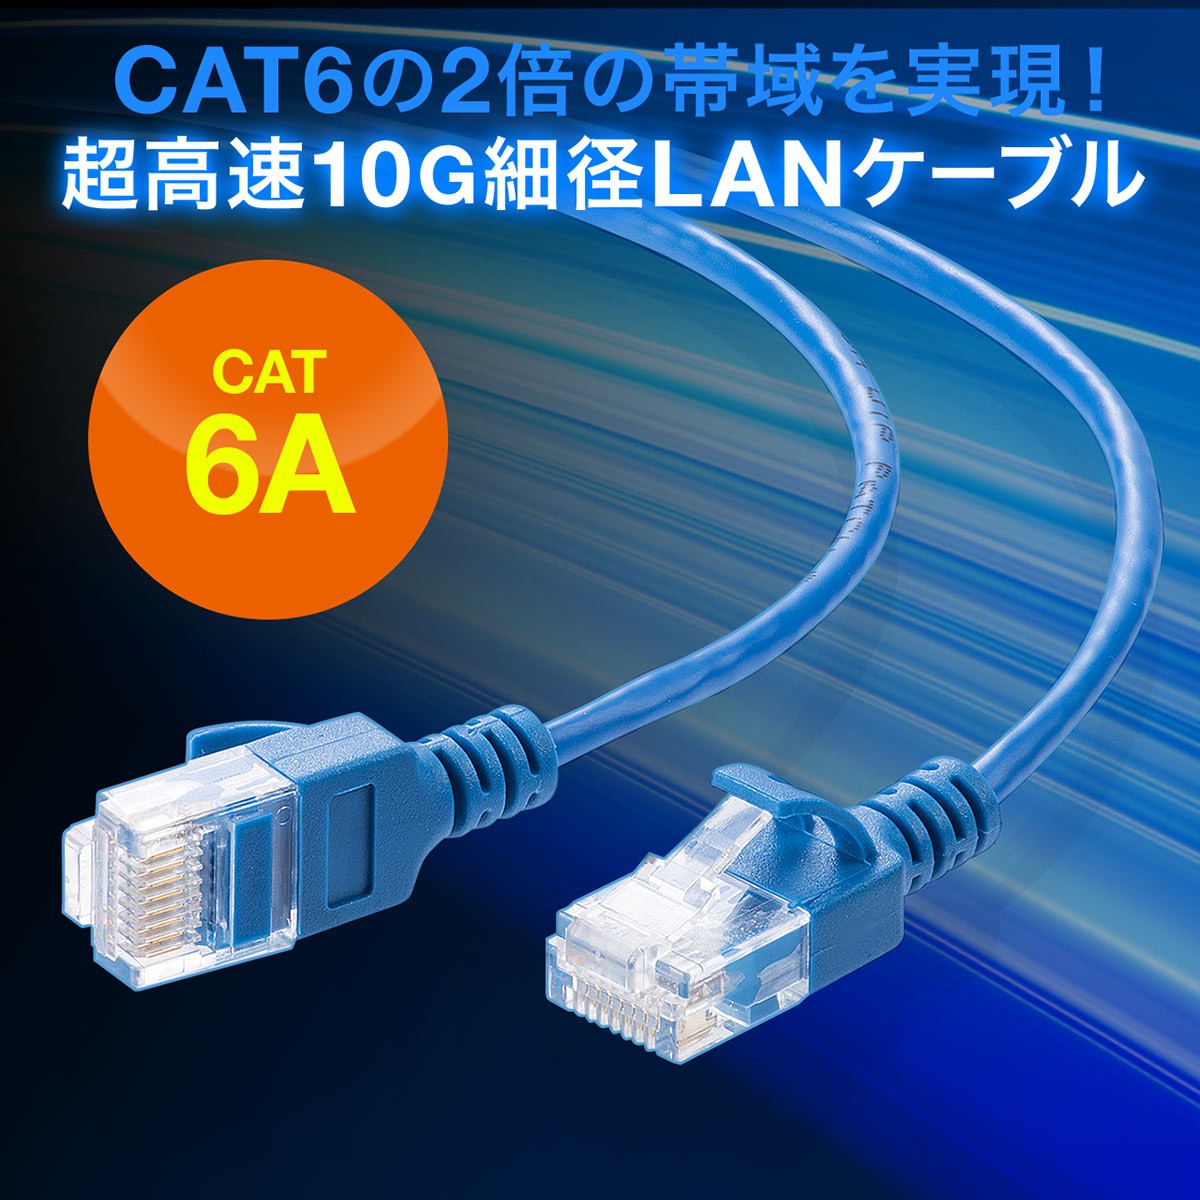 LANケーブル CAT6A 50cm カテゴリ6A カテ6A ランケーブル 通信ケーブル 超高速 10G 爪折れ防止 カバー付き 細径 柔らかい 曲げやすい より線 ストレート 全結線